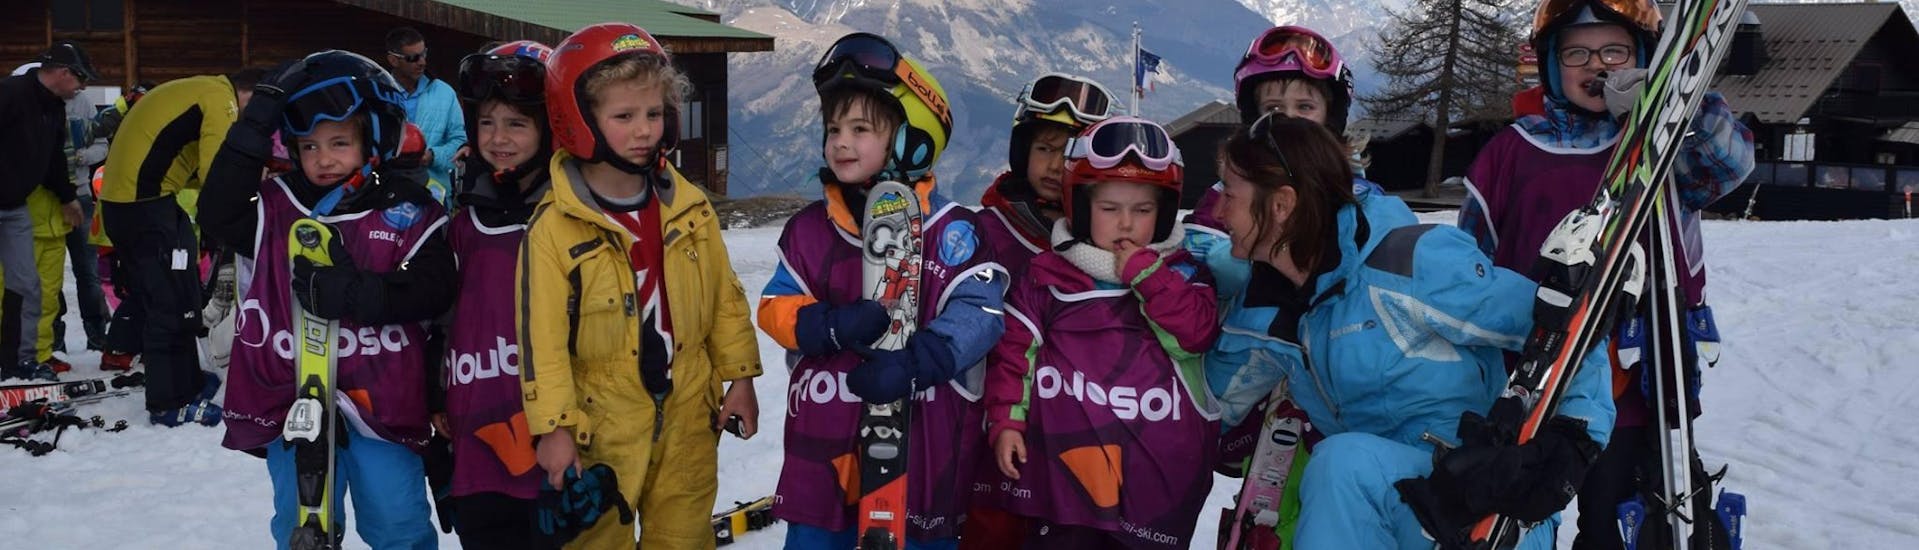 Skilessen voor kinderen vanaf 5 jaar.